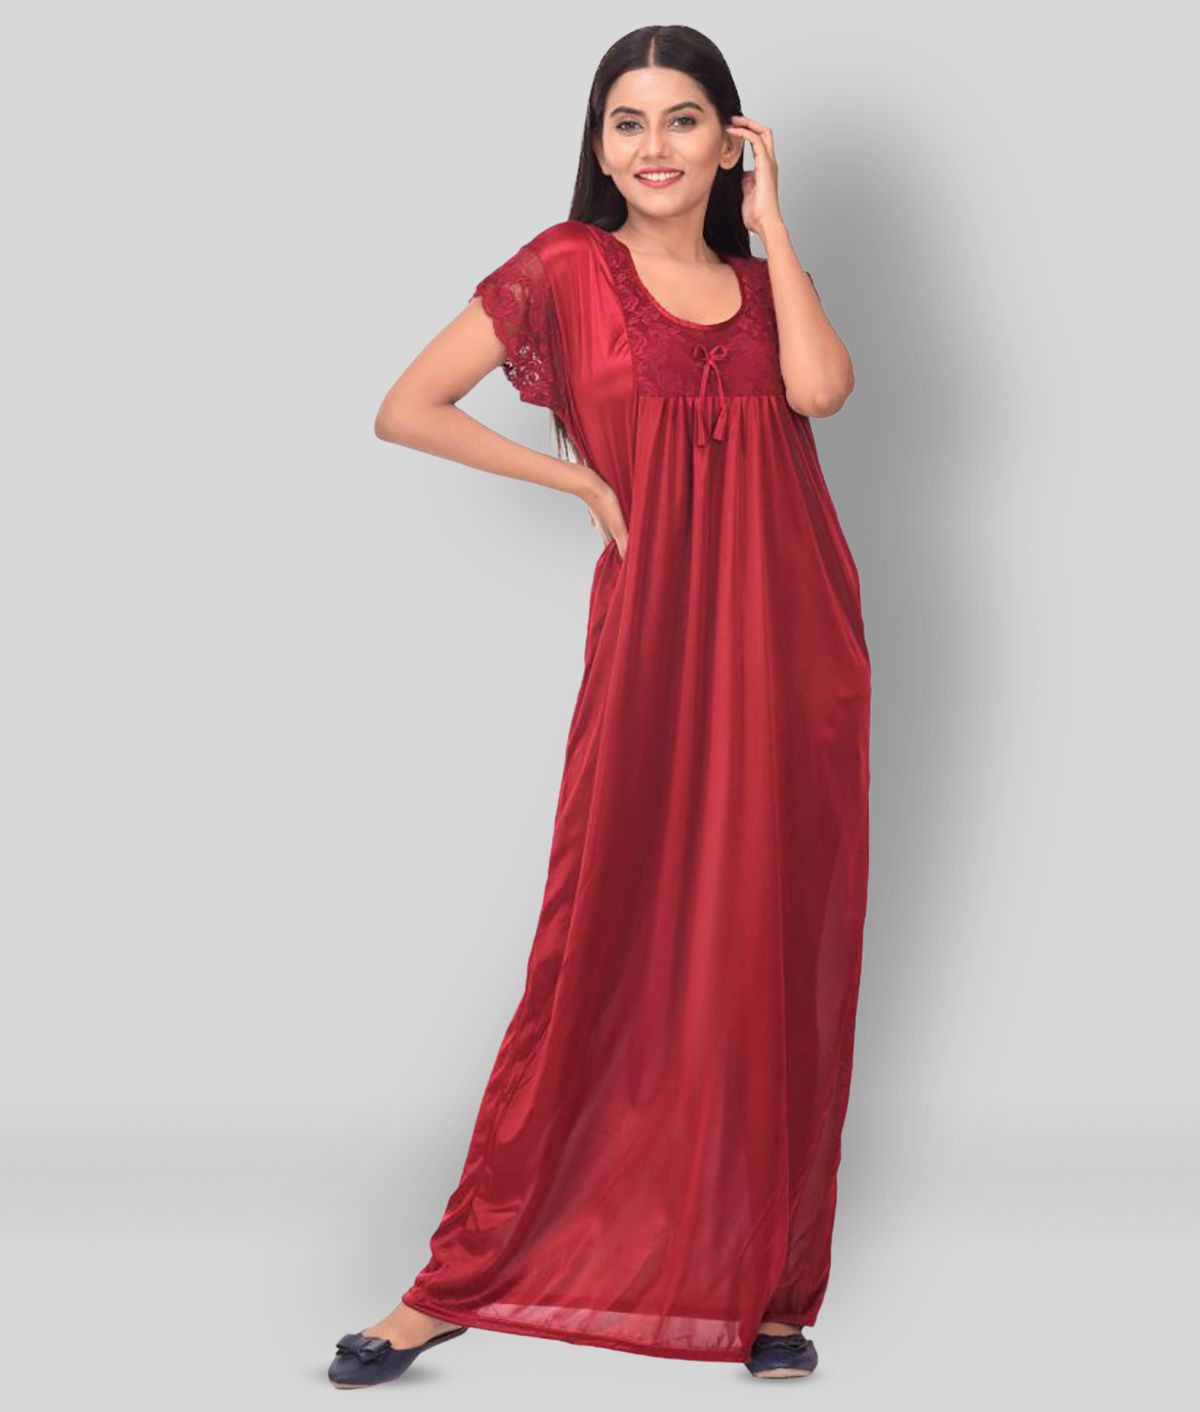     			Apratim - Maroon Satin Women's Nightwear Nighty & Night Gowns ( Pack of 1 )